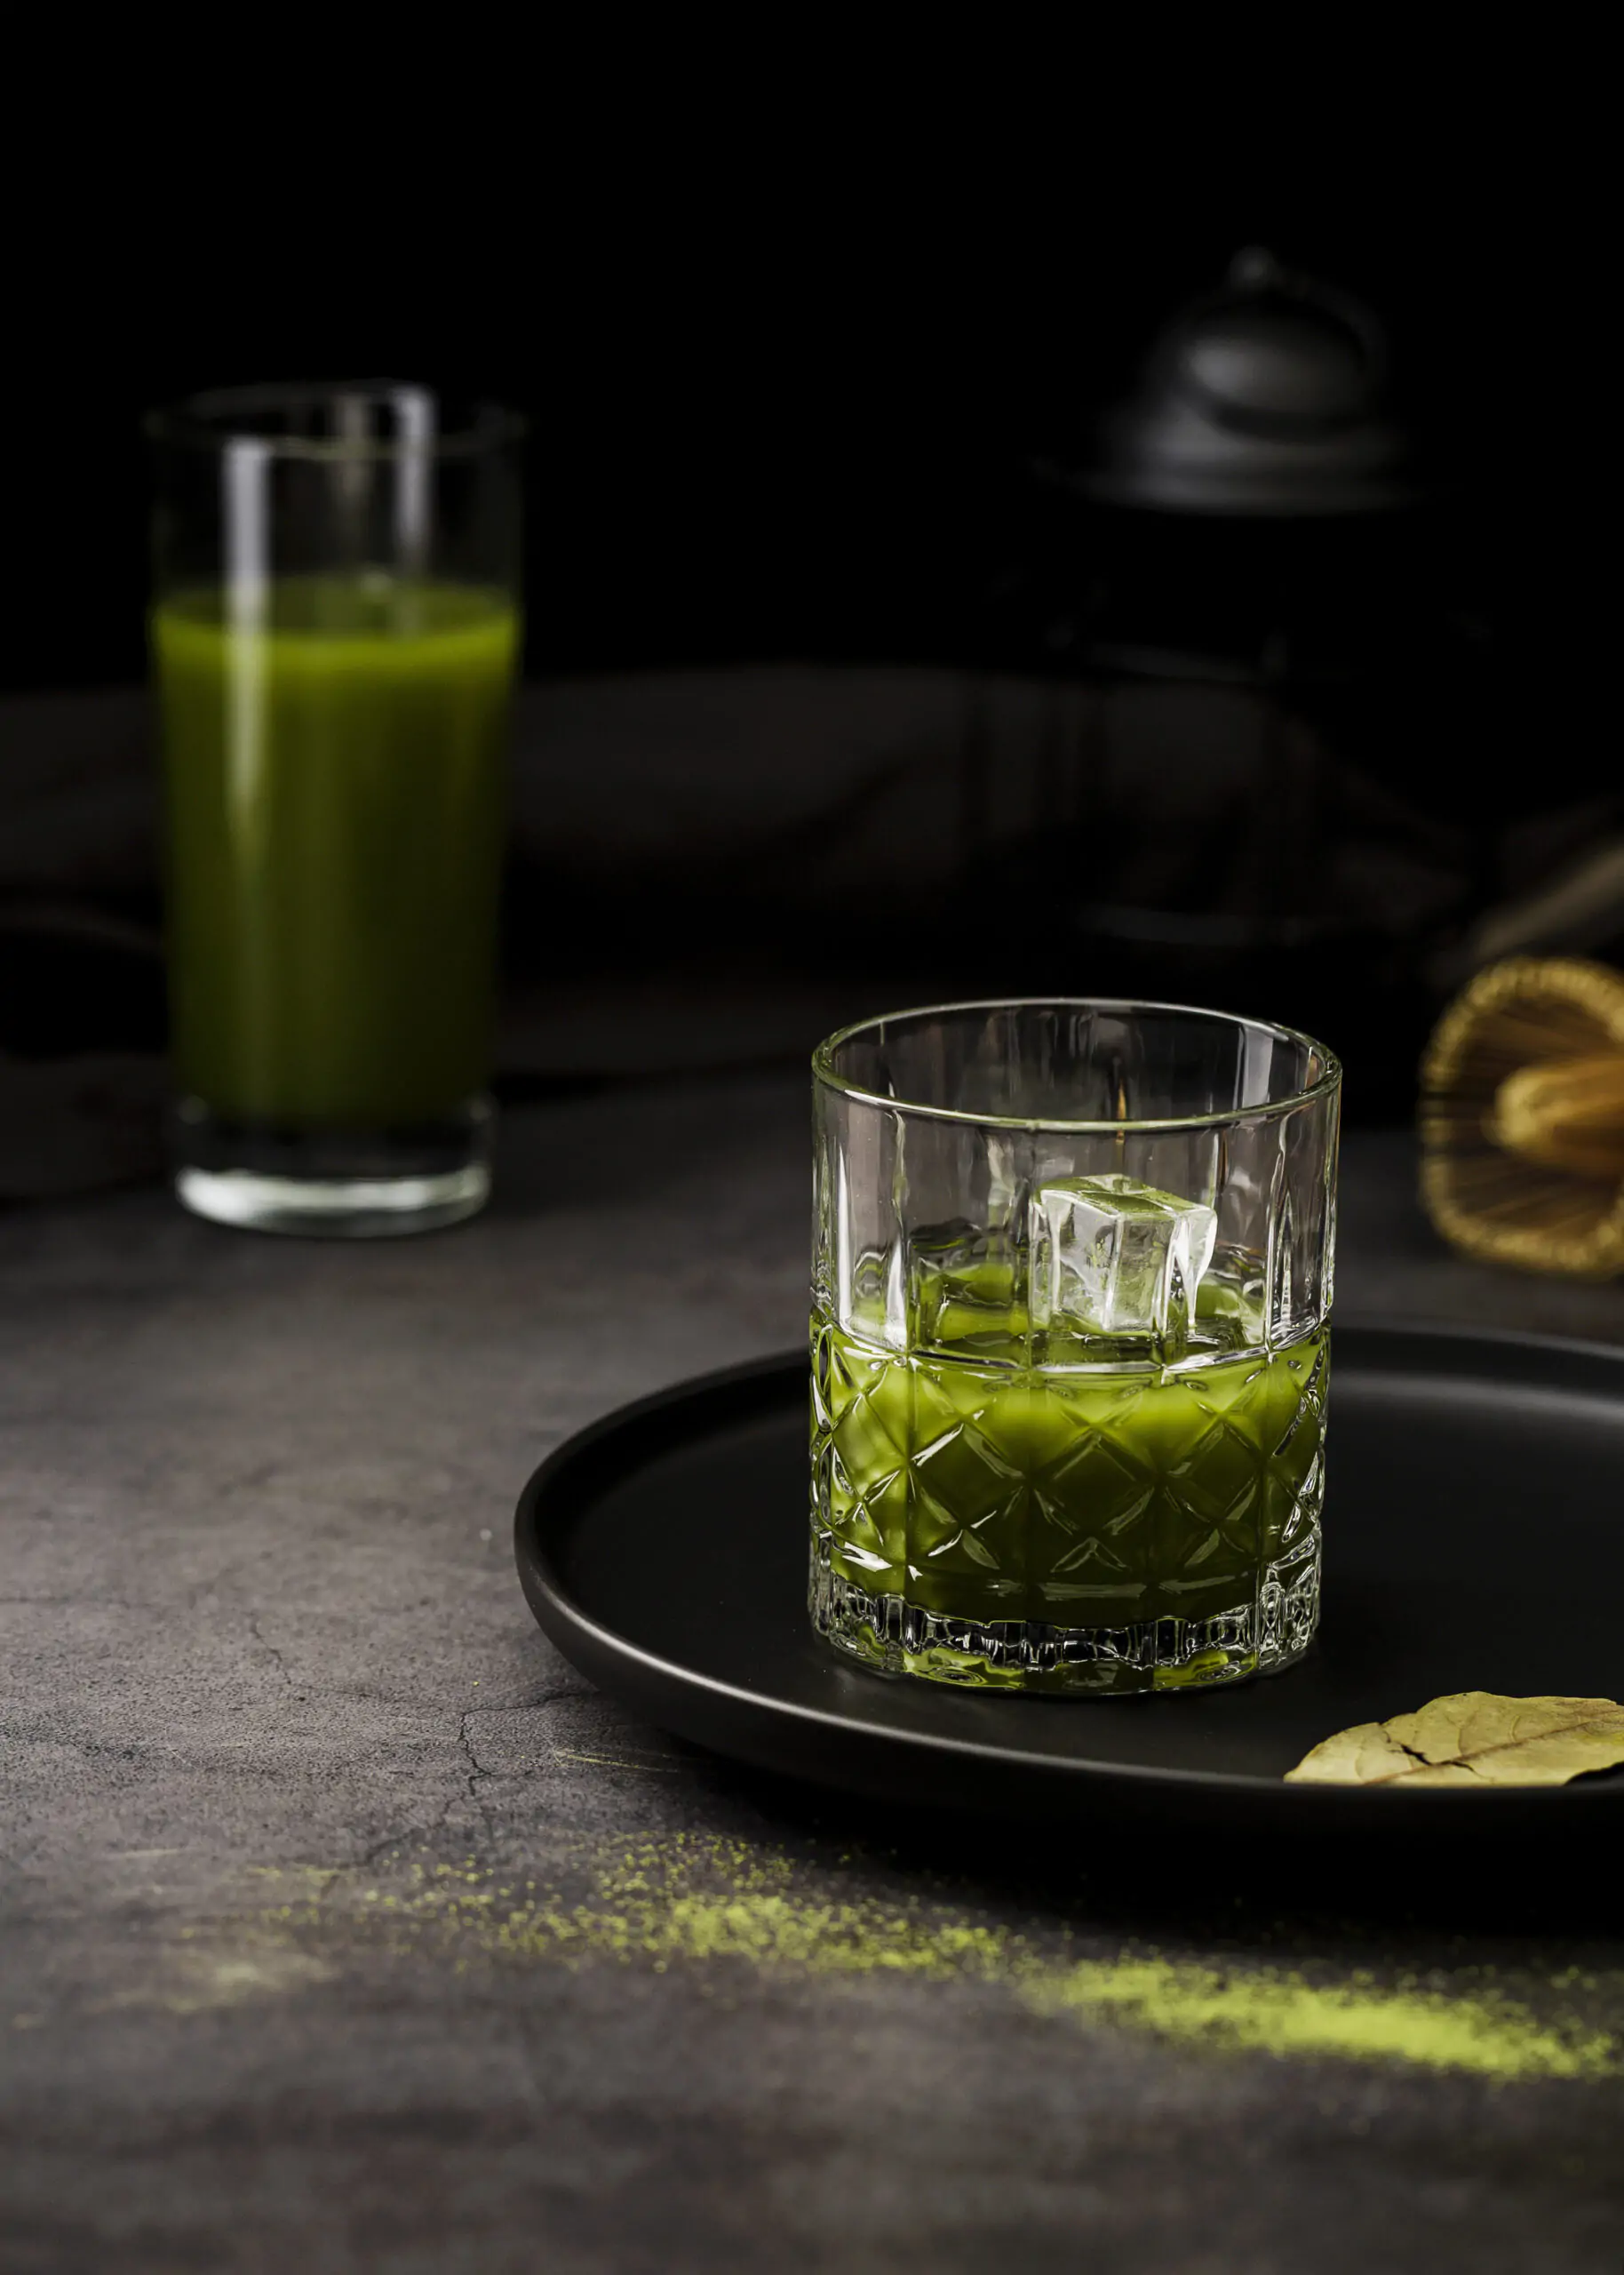 How to Make Green Tea Shots